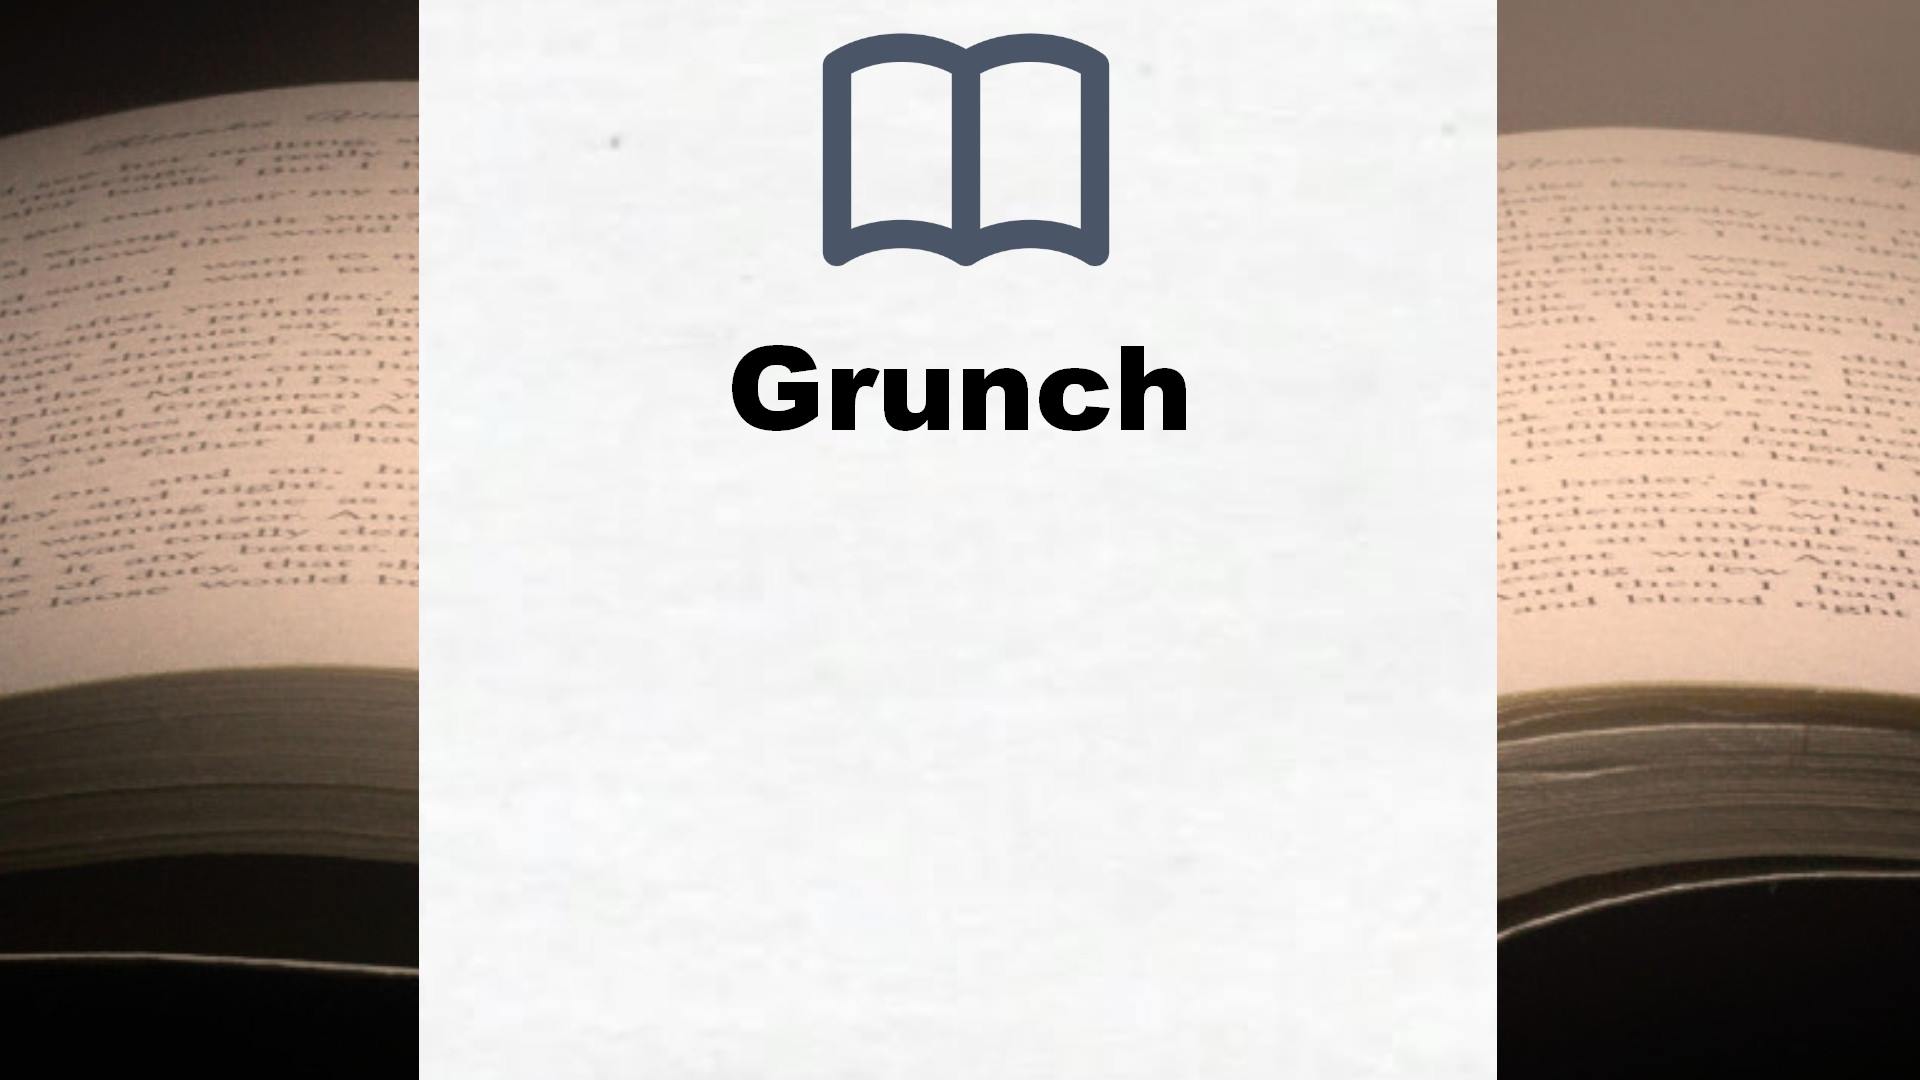 Bücher über Grunch